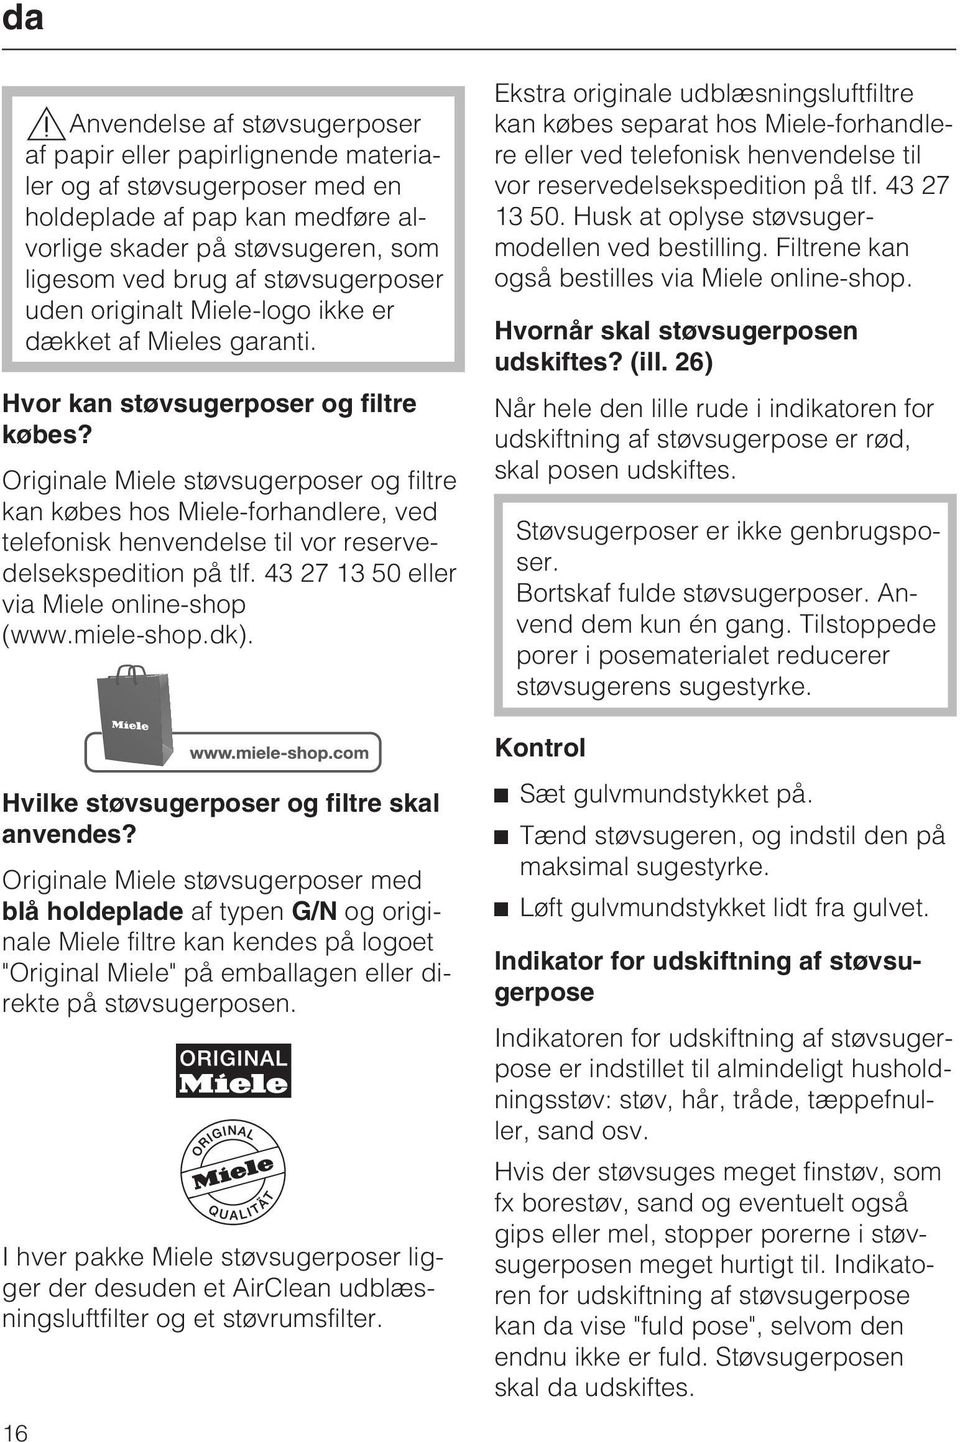 Originale Miele støvsugerposer og filtre kan købes hos Miele-forhandlere, ved telefonisk henvendelse til vor reservedelsekspedition på tlf. 43 27 13 50 eller via Miele online-shop (www.miele-shop.dk).